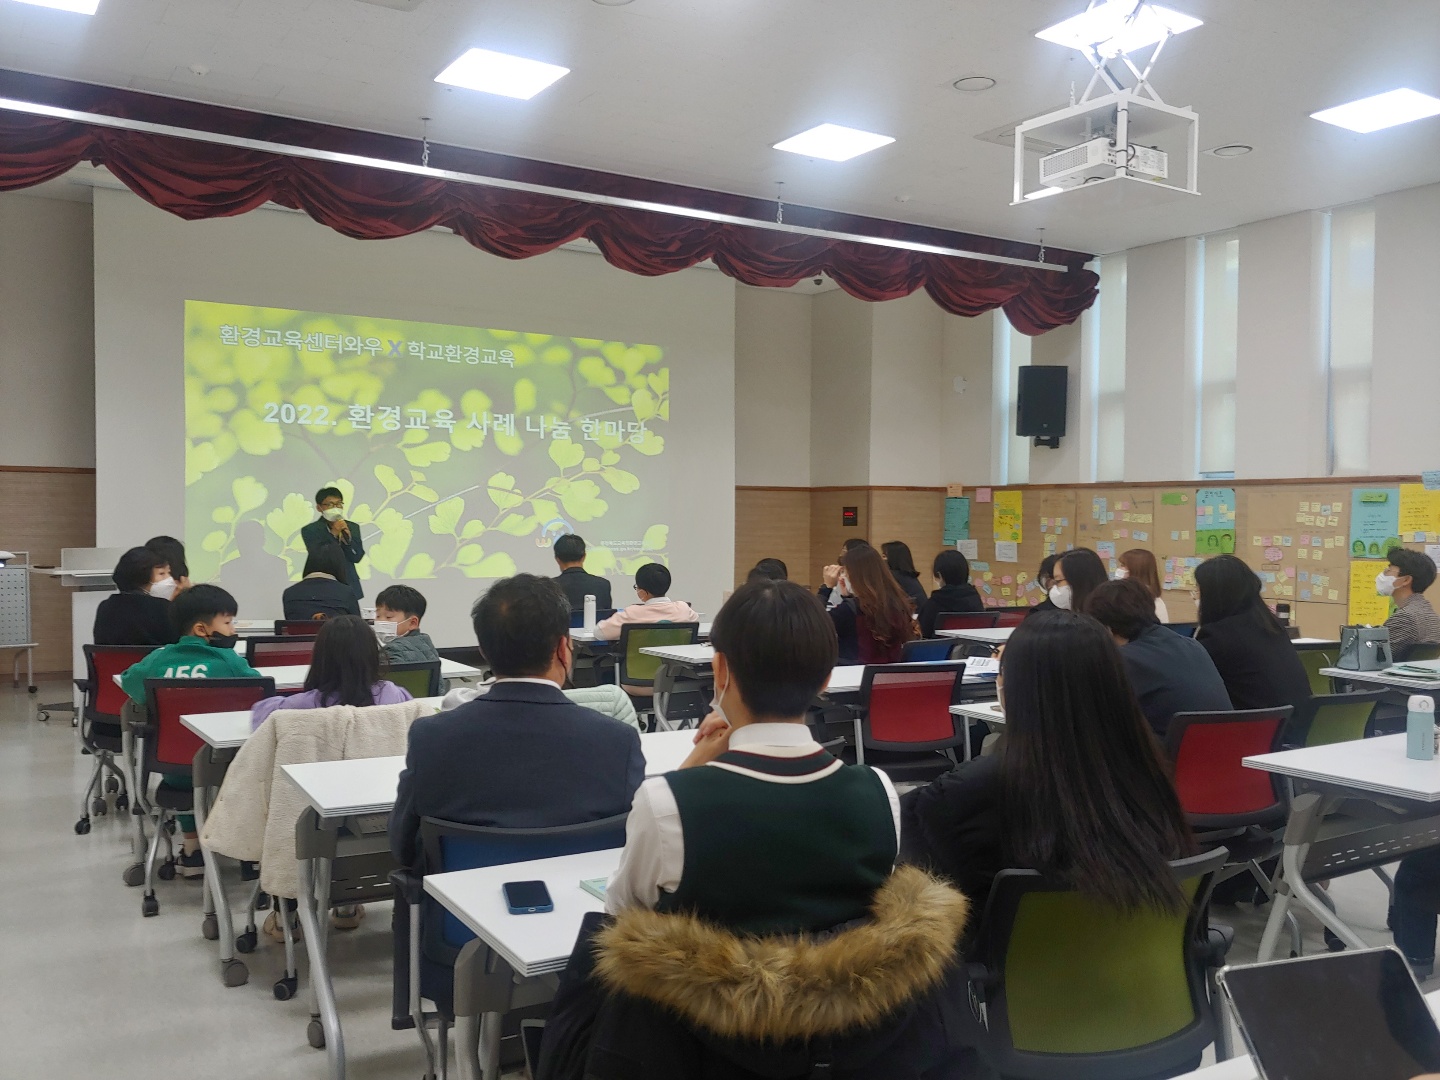 환경교육 사례나눔 발표회 개최